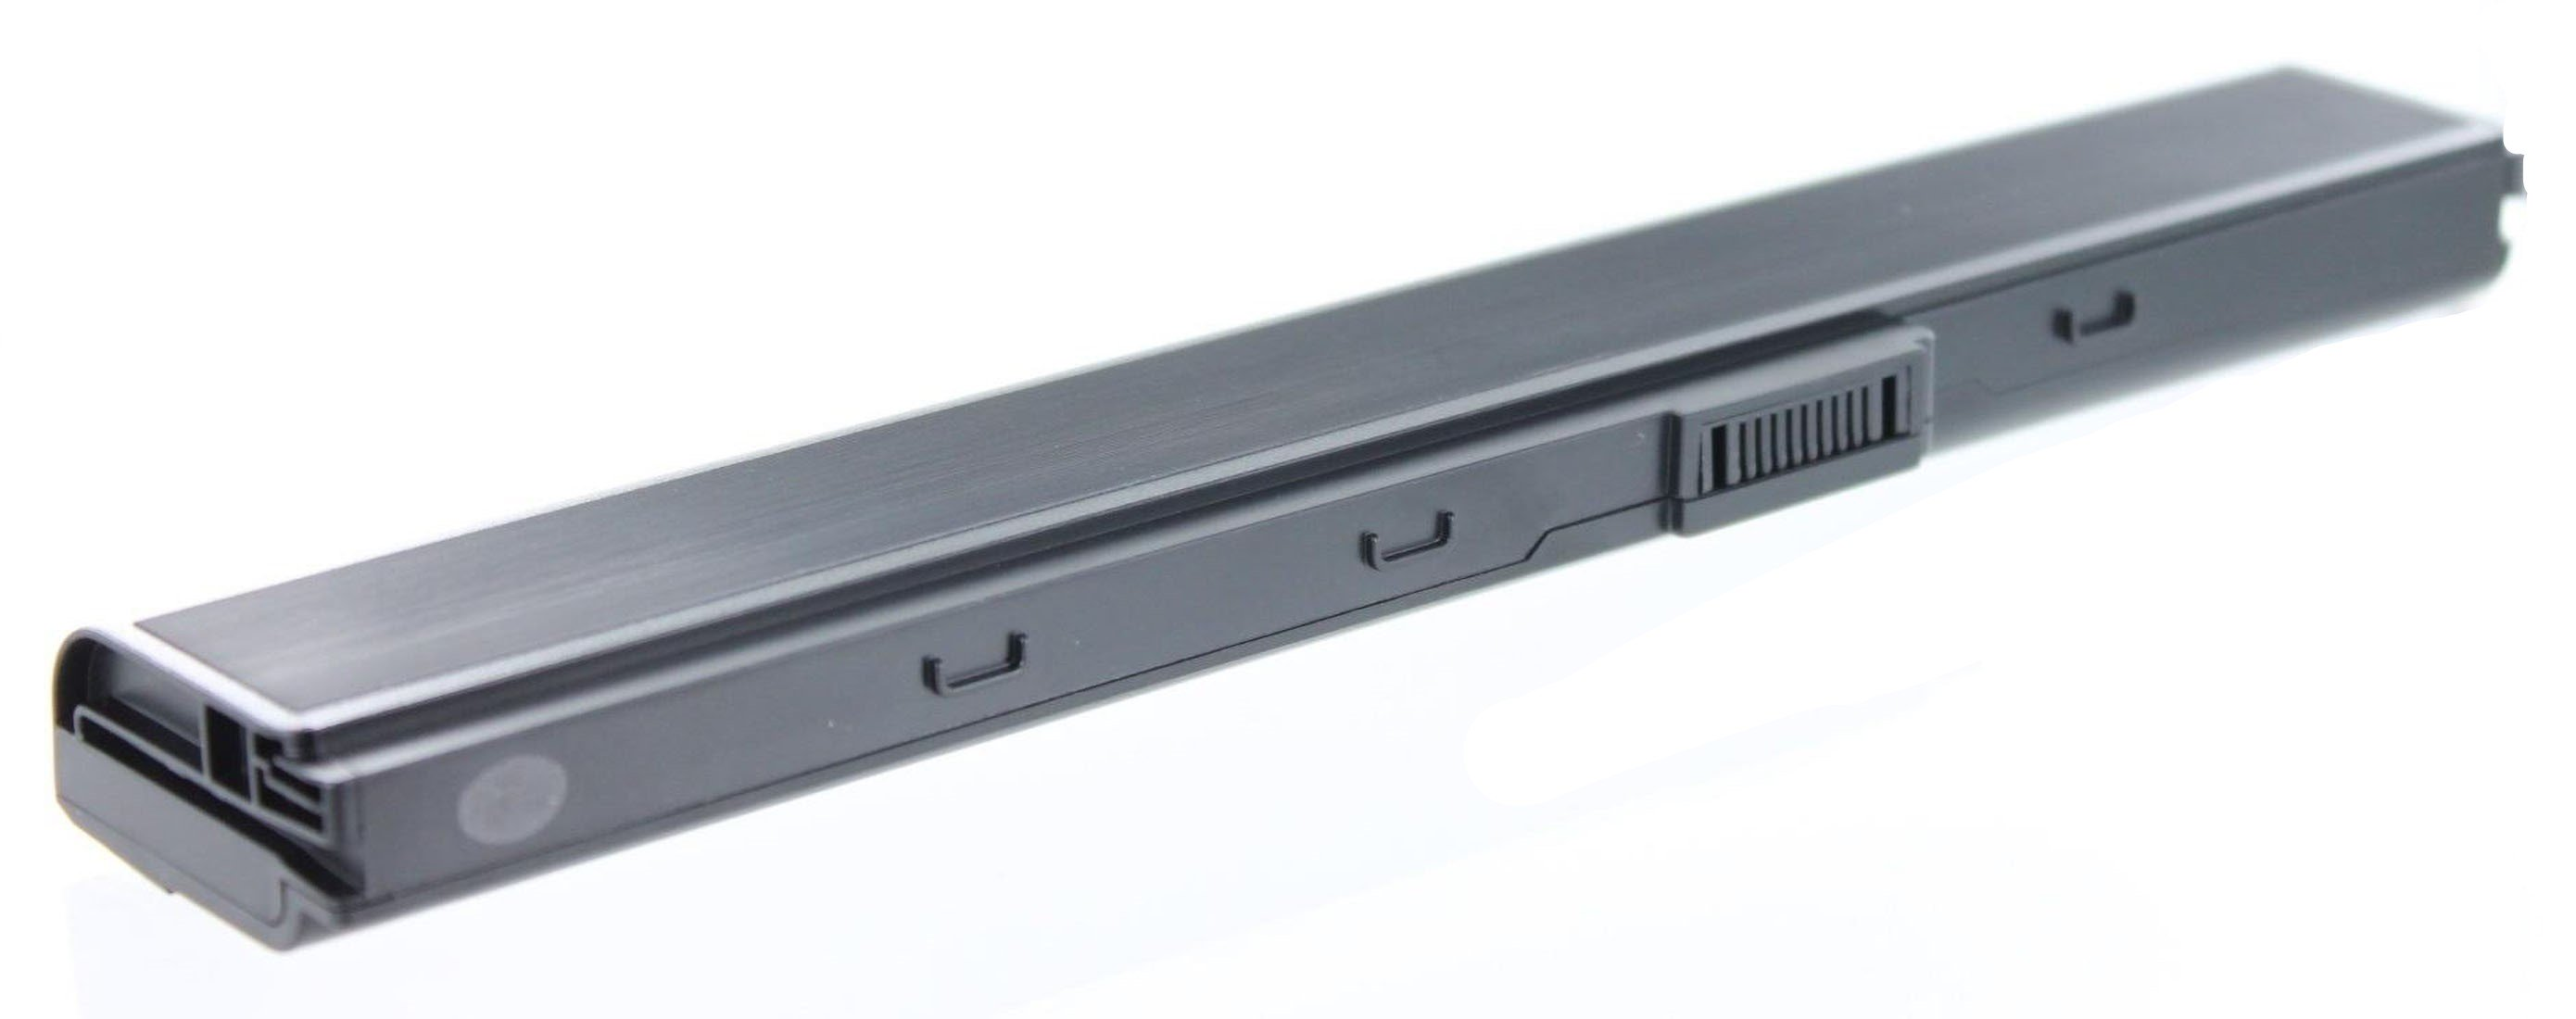 AGI Akku 4400 Pro Li-Ion mit Volt, 10.8 mAh kompatibel Notebookakku, Asus 52JU-SX116V